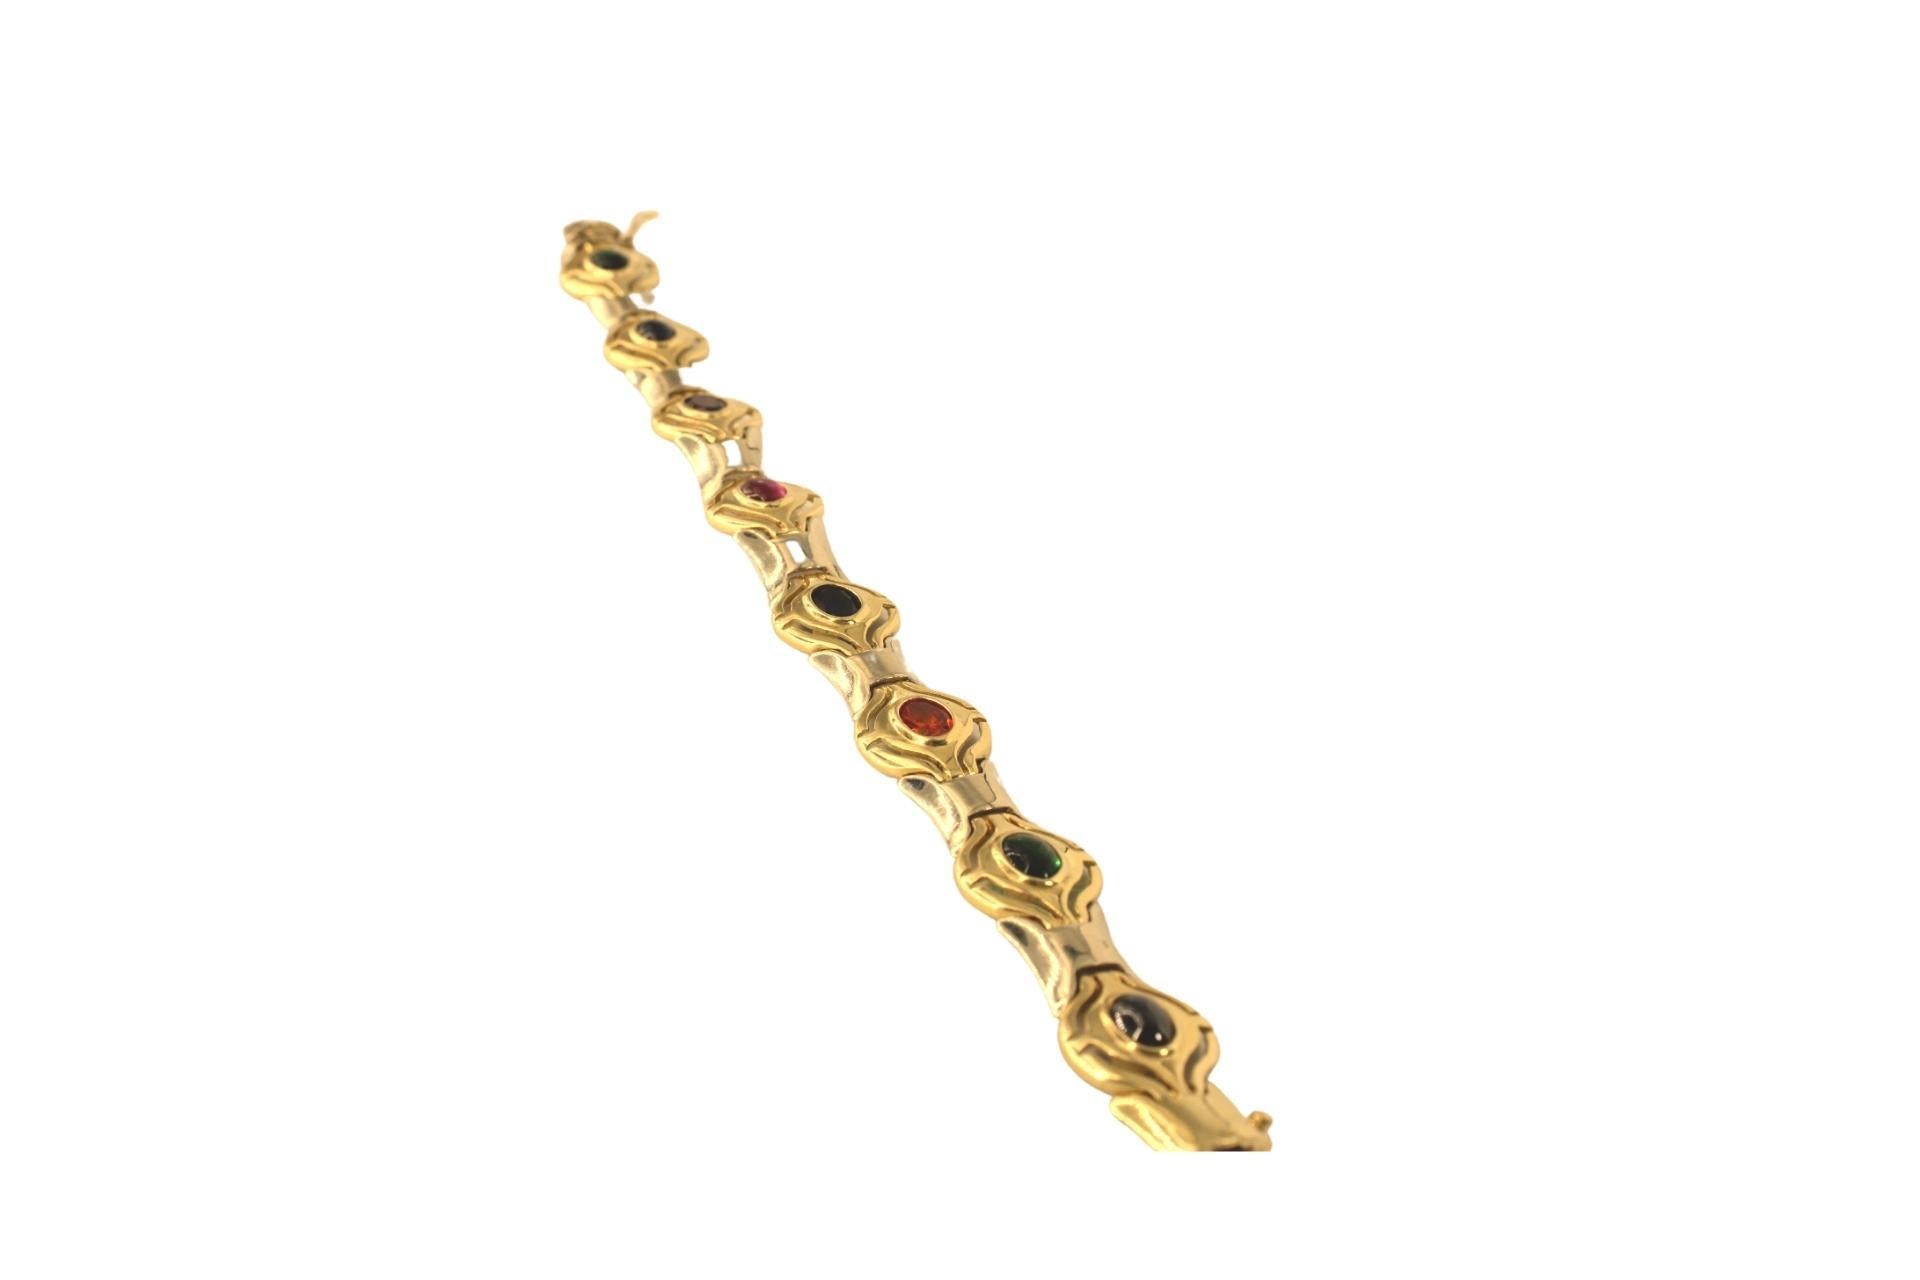 Multy Color Stones Armband aus 14 Karat Gelb-Weiß-Gold
14 Karat Multi-Edelstein-Armband. Dieses bunte Gliederarmband enthält elf ovale, facettierte Edelsteine aus Gelbgold
 Länge - ungefähr 7,3 Zoll oder (18,7 cm)
Breite: ca. 1,5 cm
Das wunderschöne